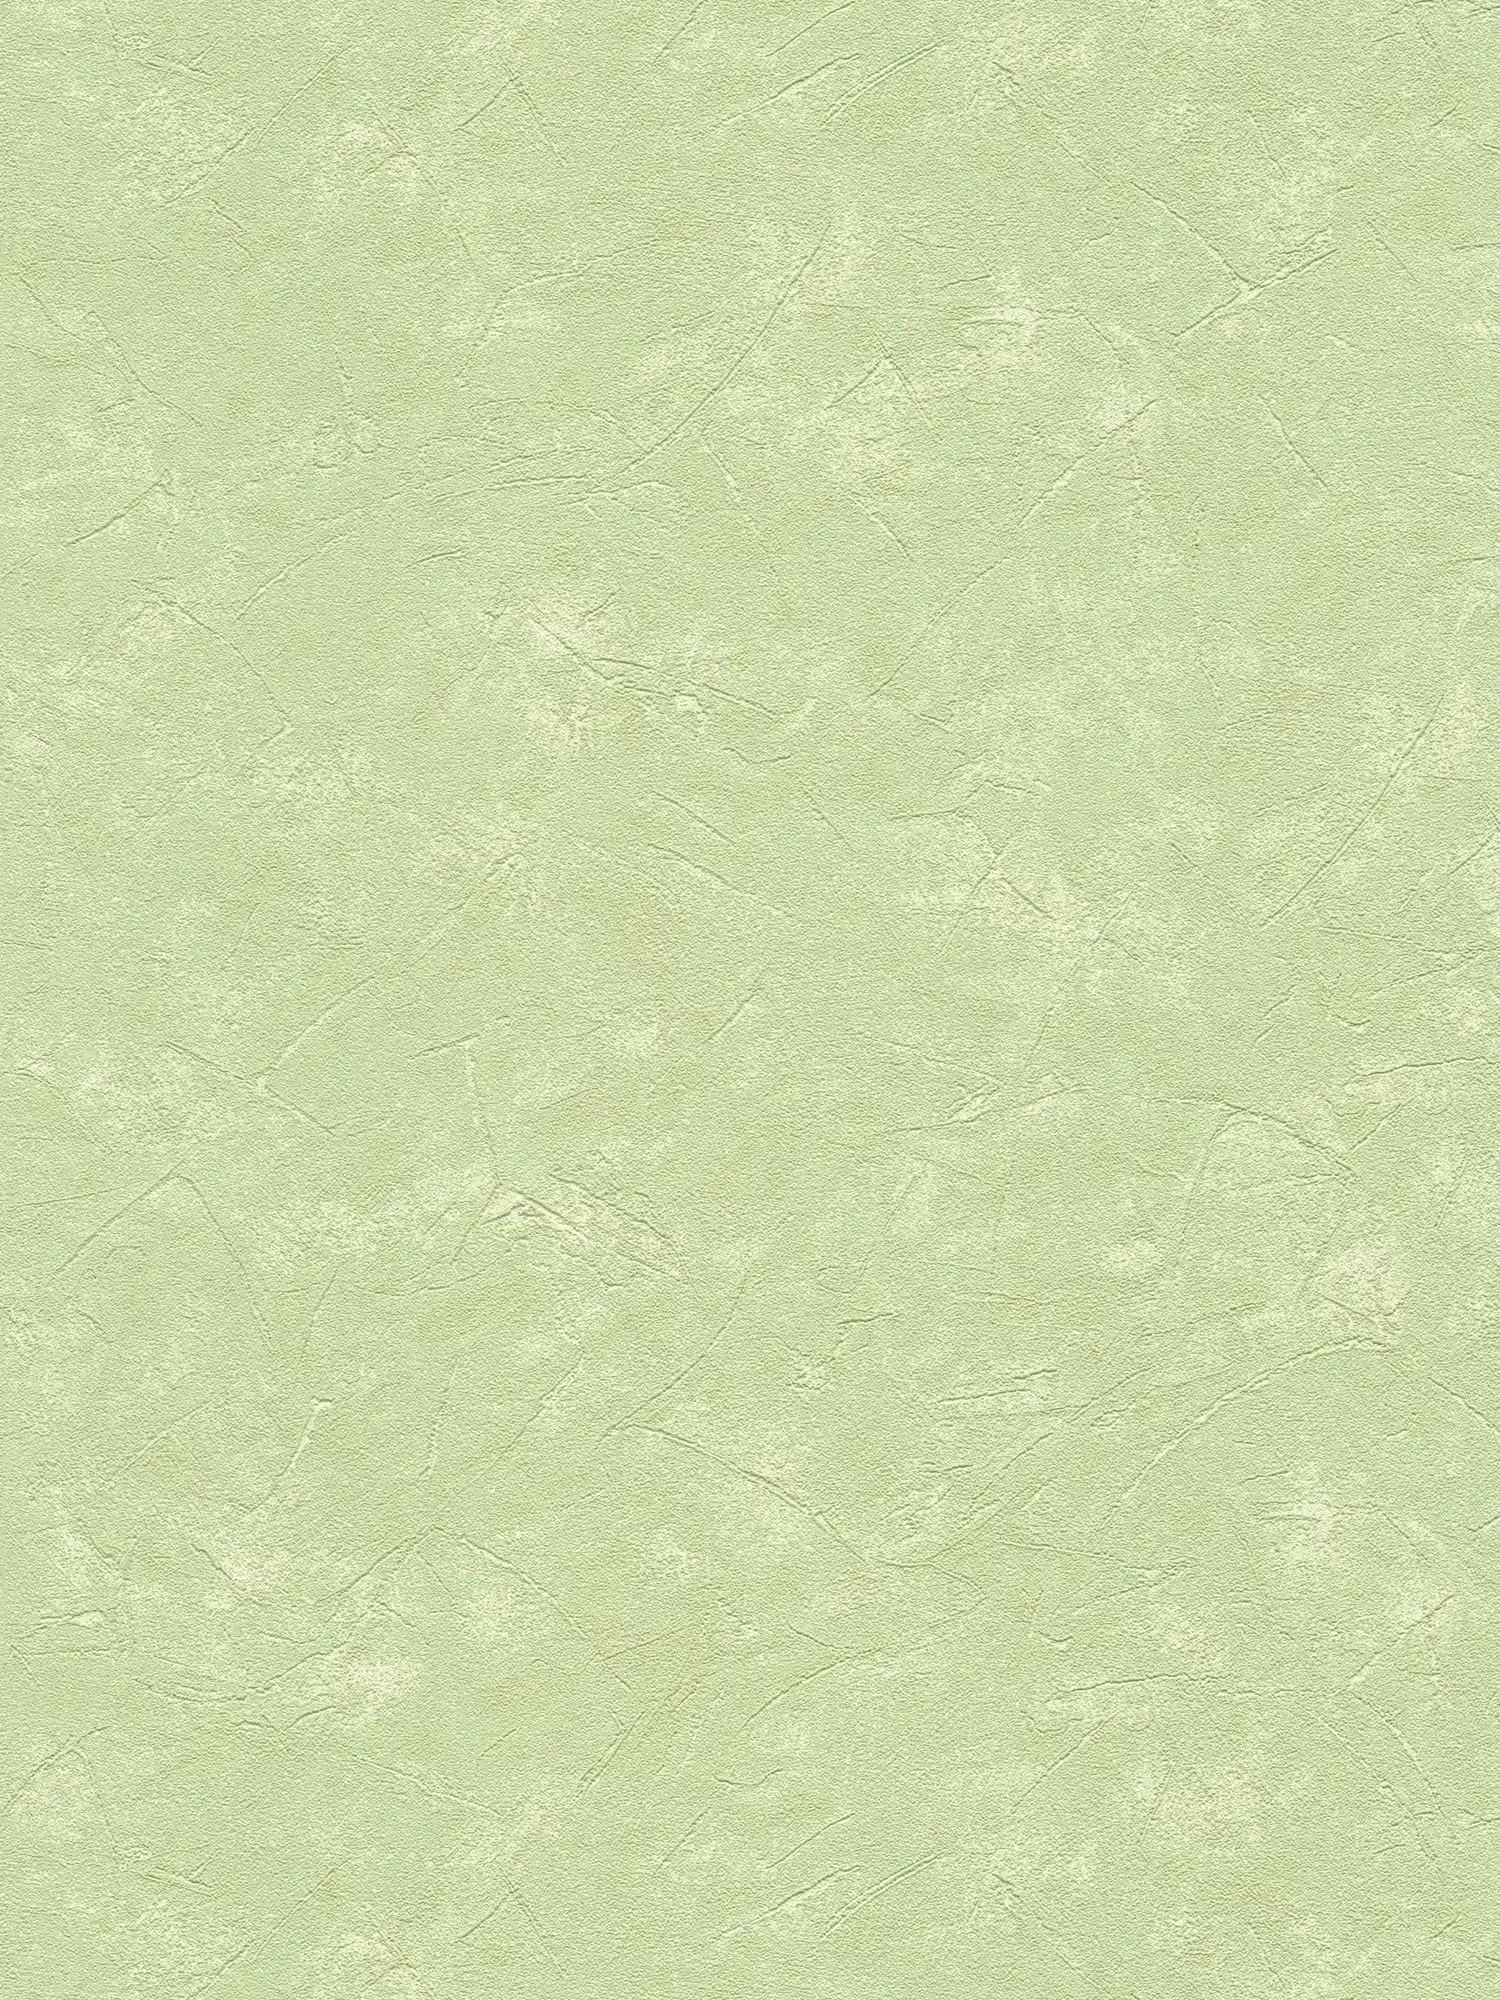 Carta da parati effetto intonaco verde chiaro con struttura utilizzata
